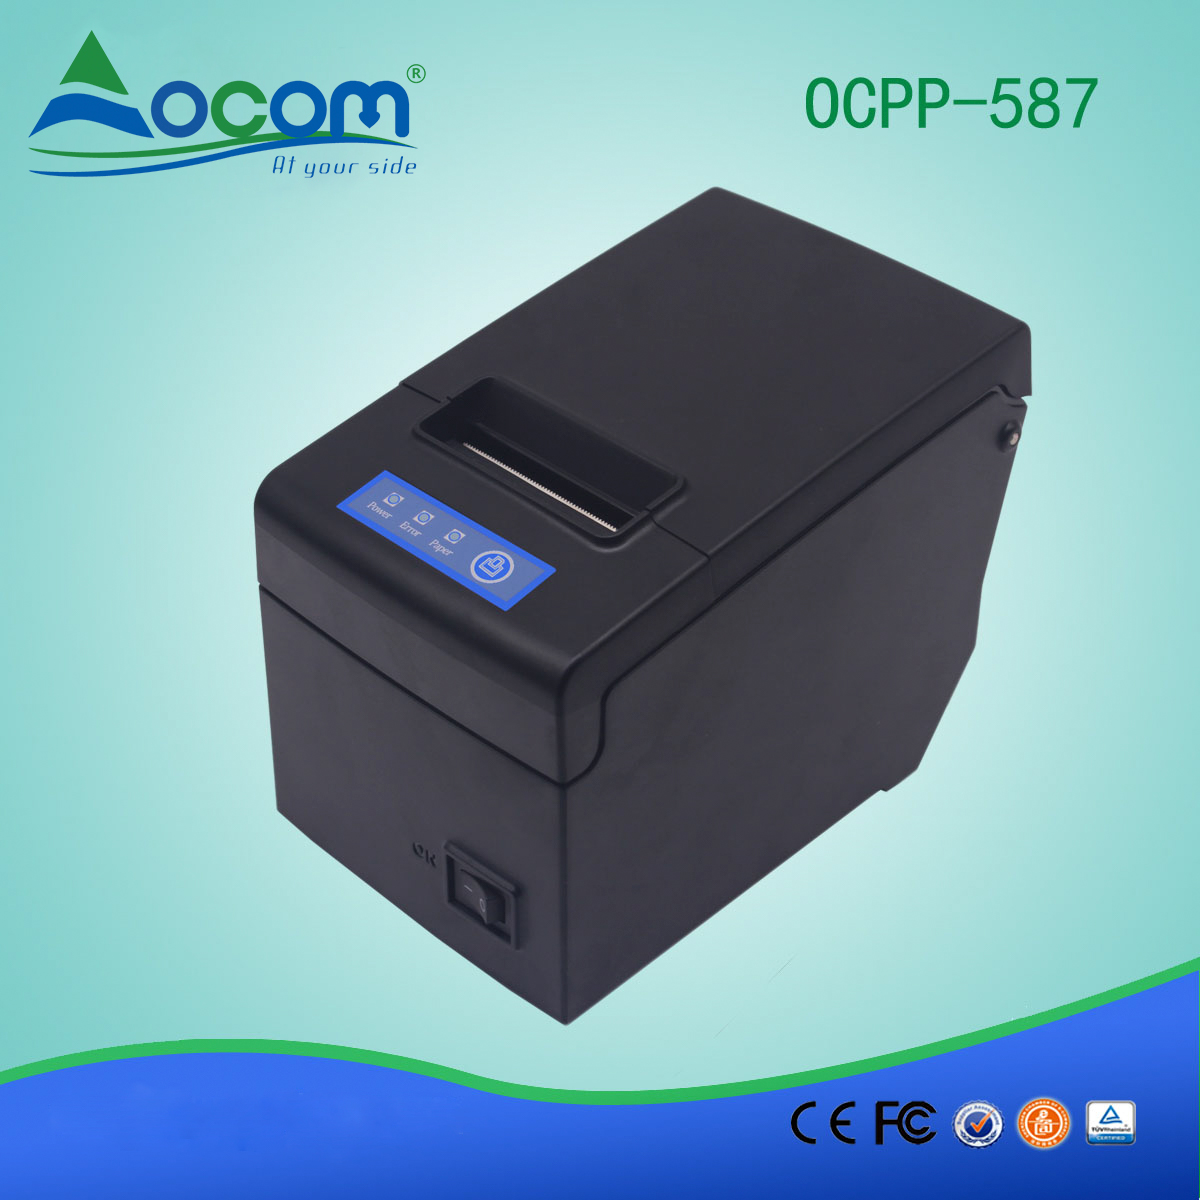 Impressora de recibos térmicos de 58mm OCPP-587-UB USB + Bluetooth Port